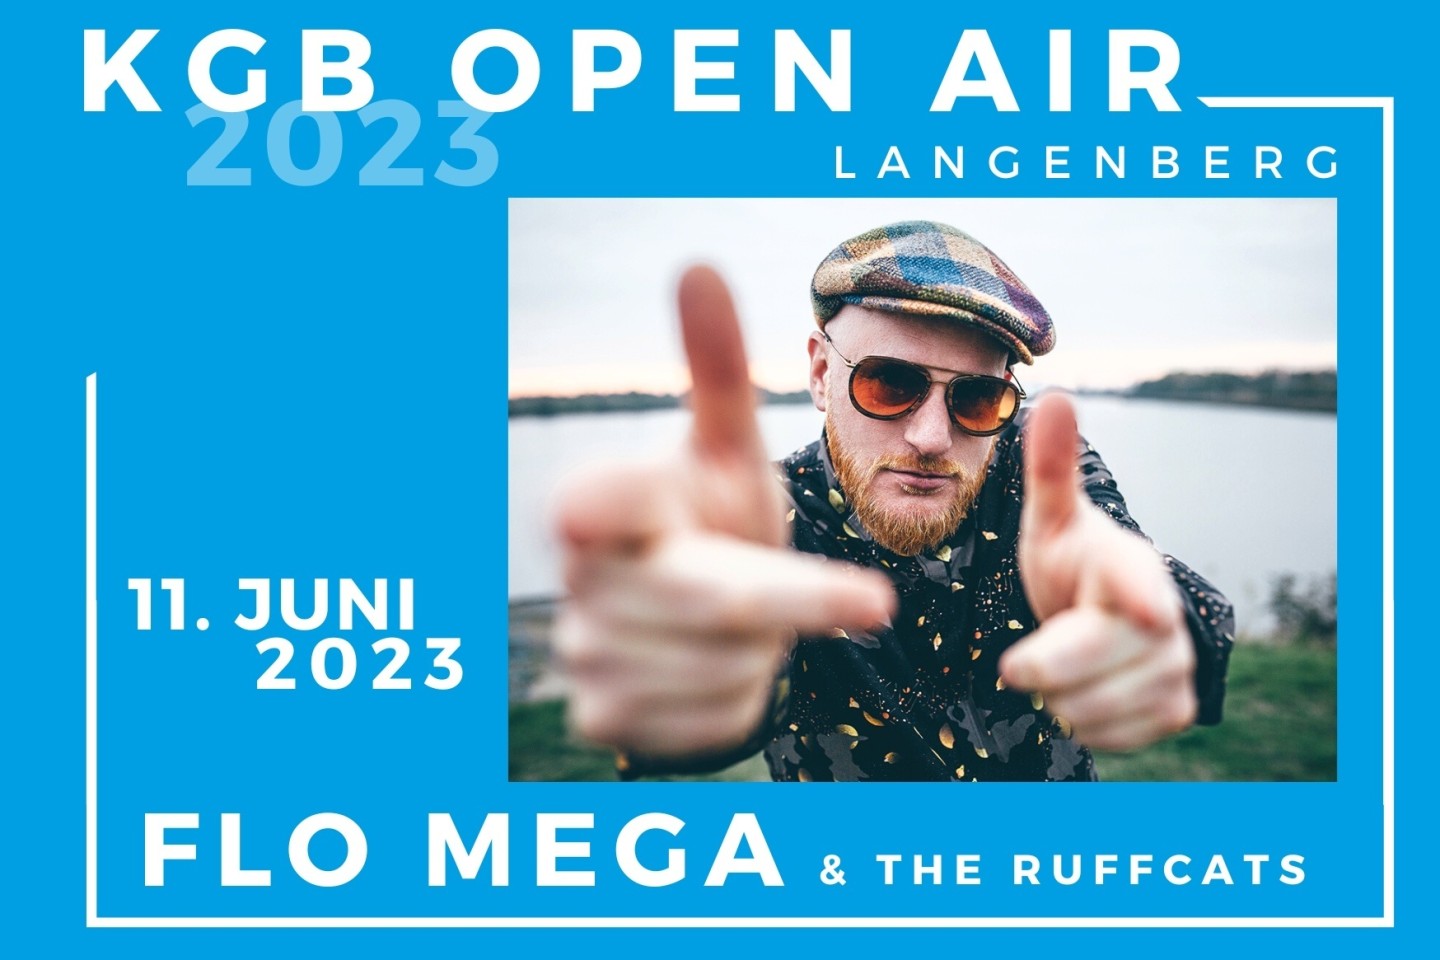 KGB Open Air 2023 - Flo Mega & The Ruffcats